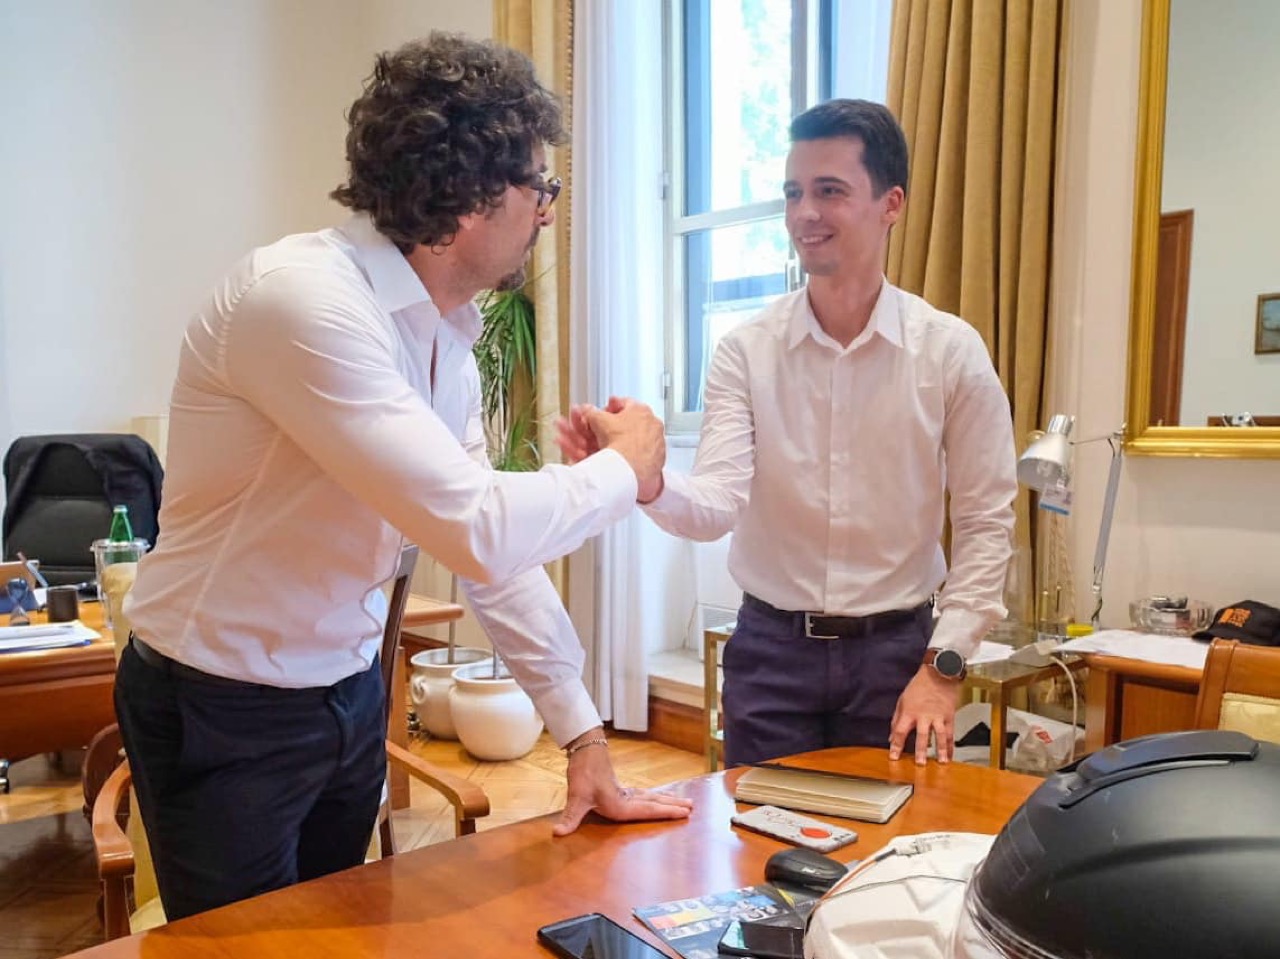 Casco intelligente - ministro Toninelli incontra giovane programmatore